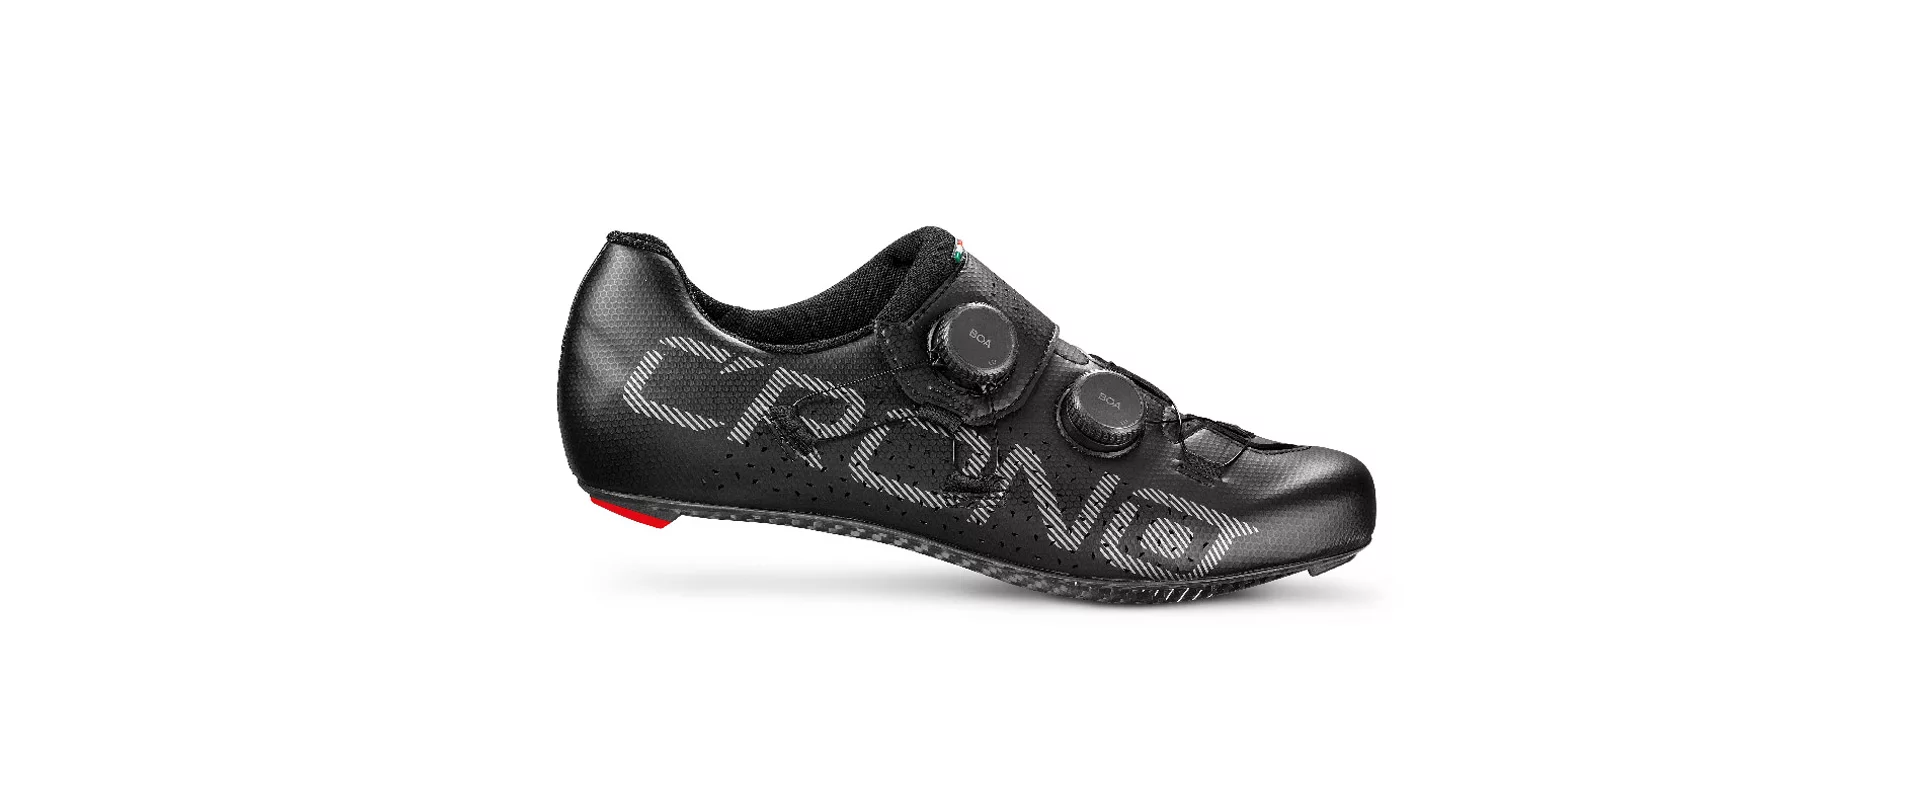 Crono CR-1-22 Carbon / Велотуфли шоссейные